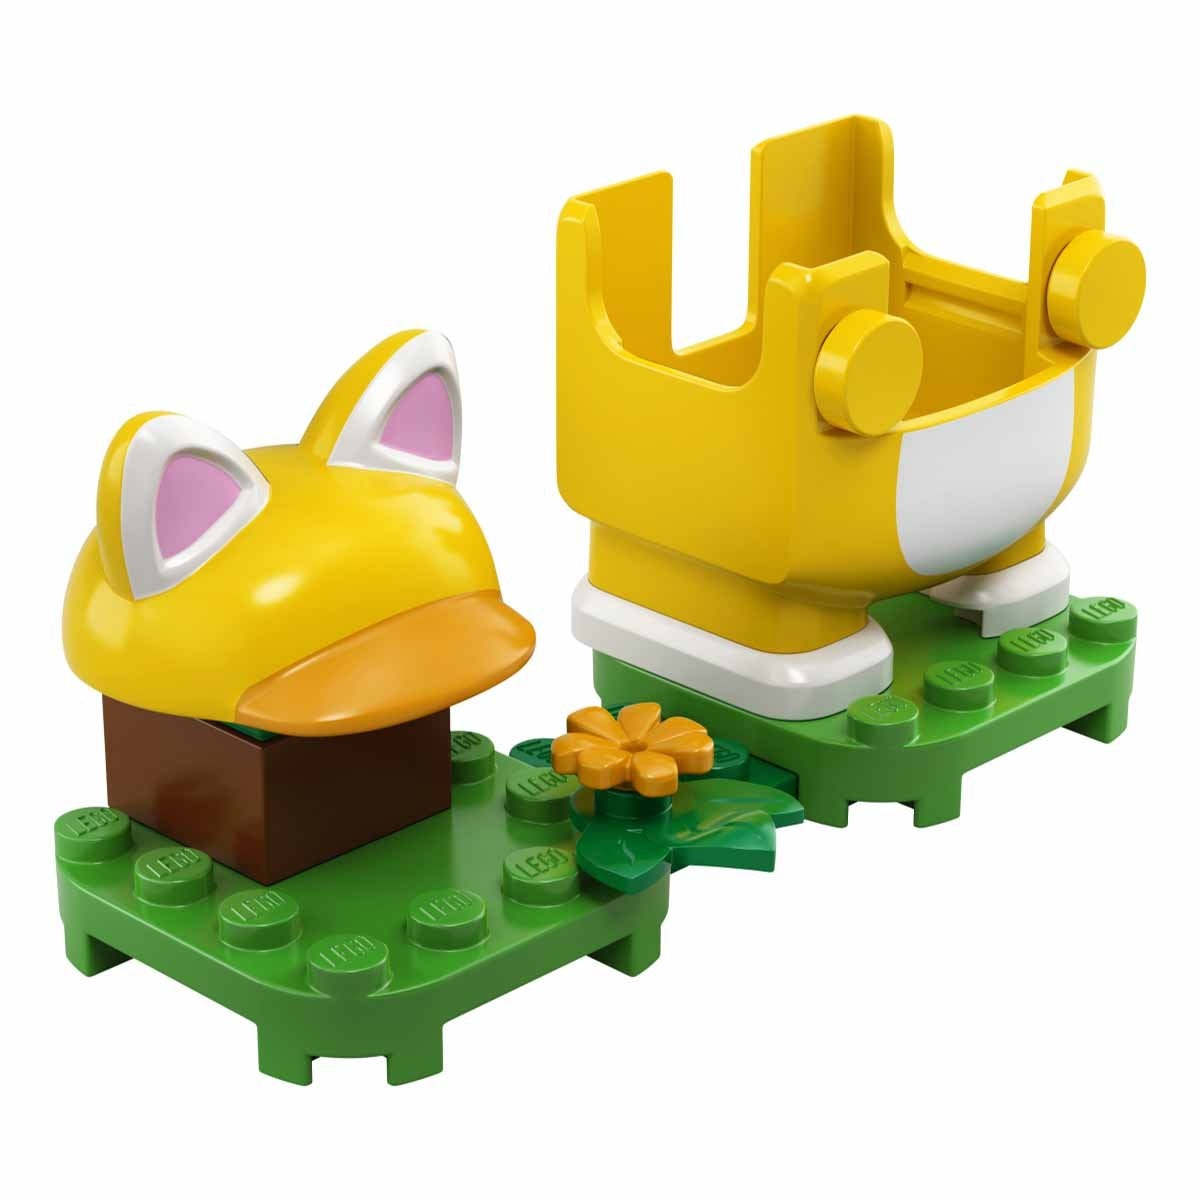 Pack Potenciador: Mario Felino Lego Super Mario